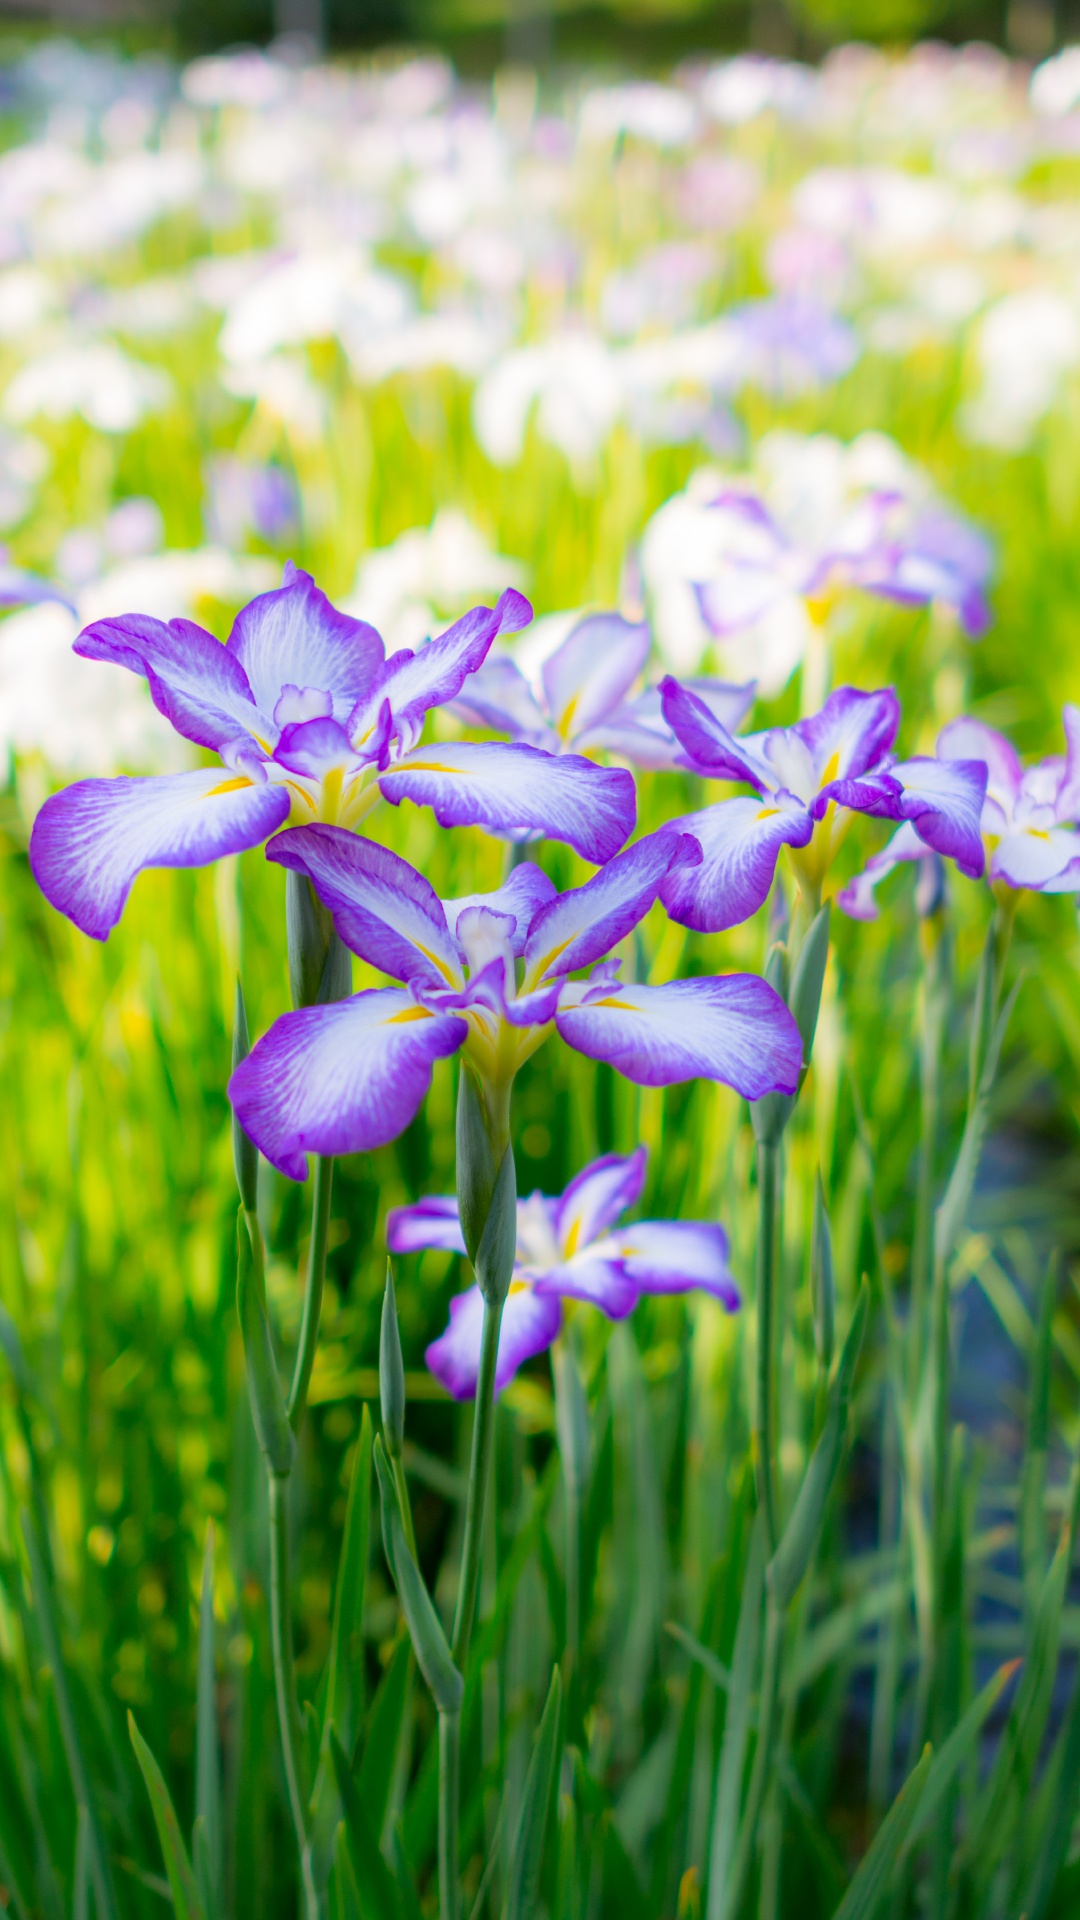 Purple and White Flowers in Tilt Shift Lens. Wallpaper in 1080x1920 Resolution